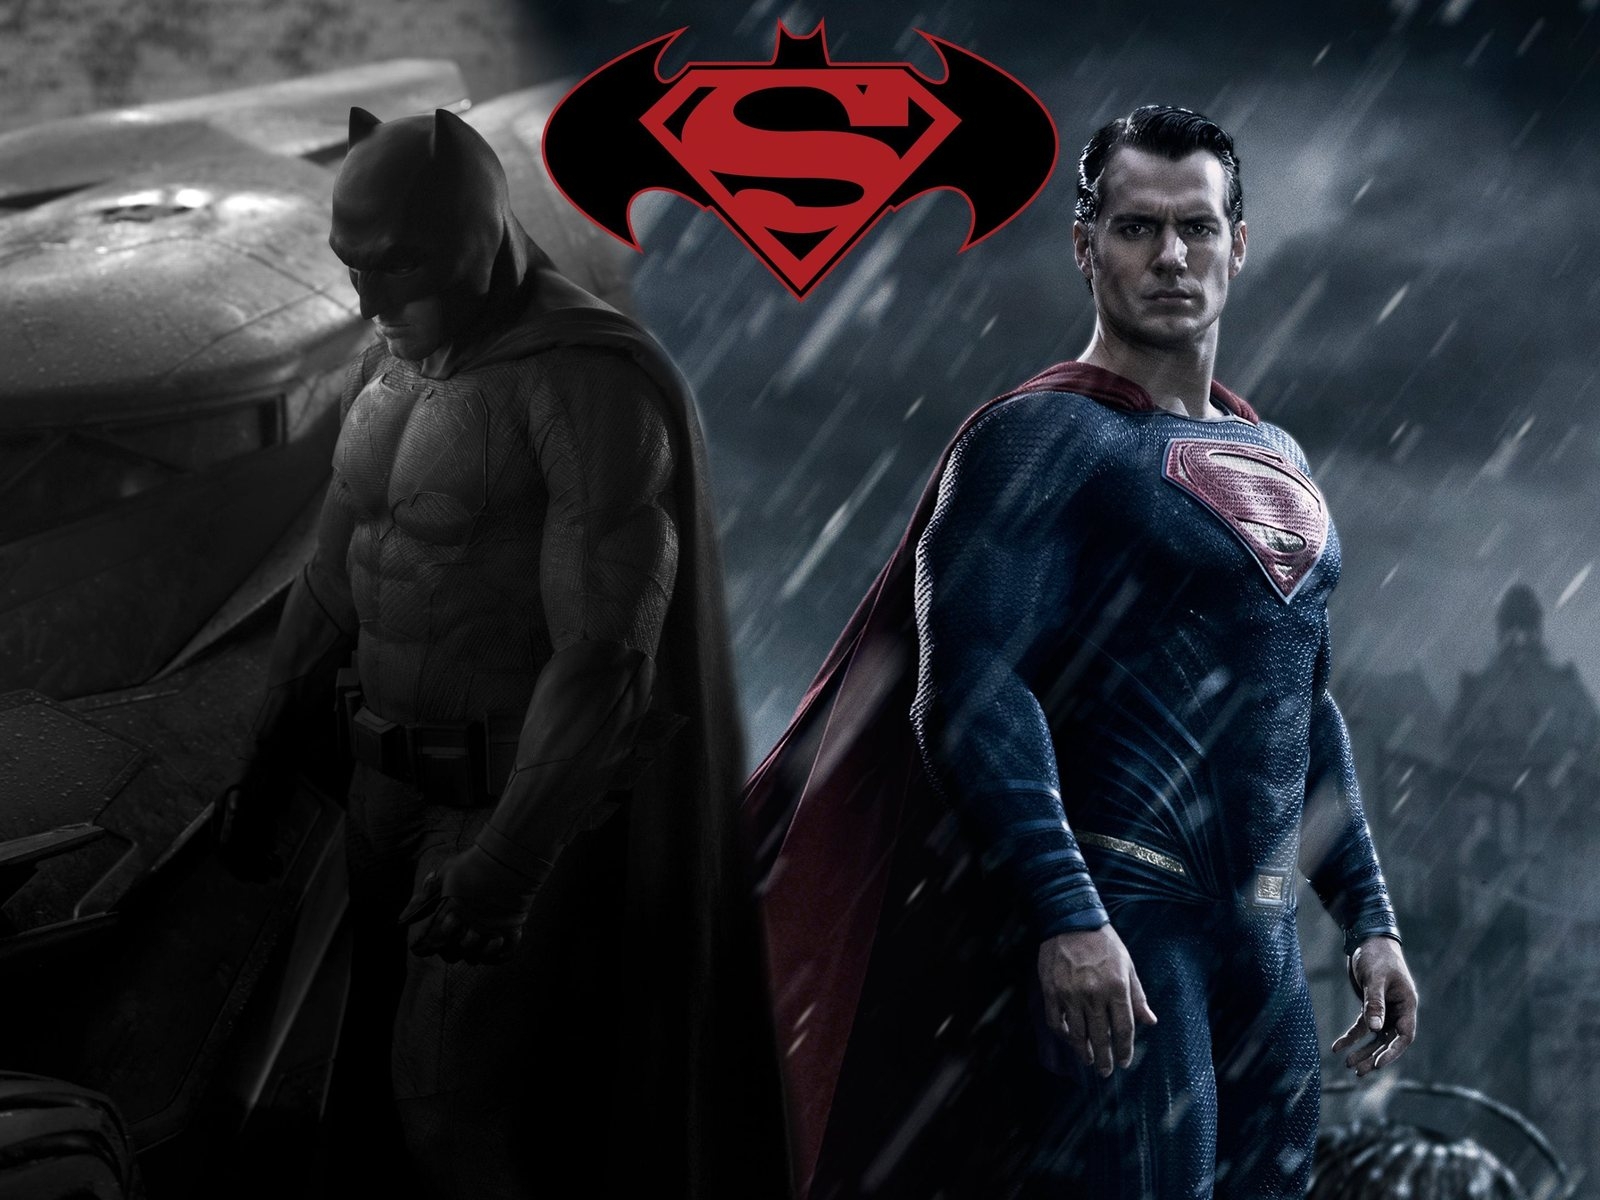 Batman vs Superman Fan Art for 1600 x 1200 resolution